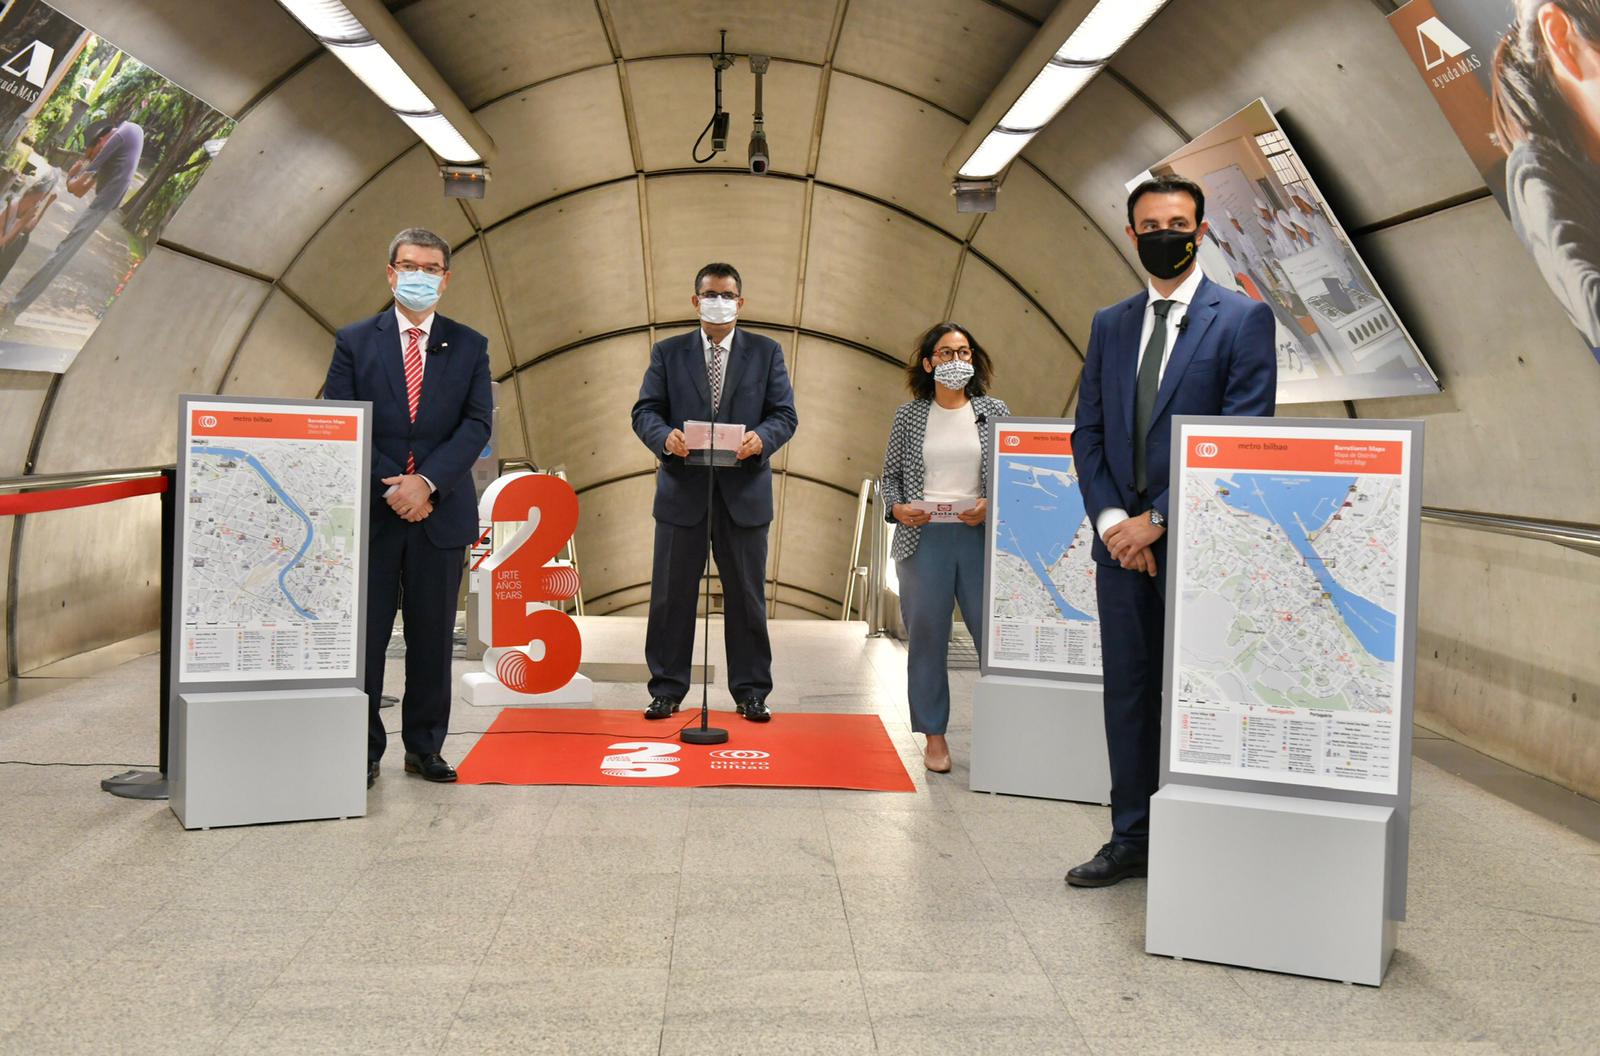 Nuevos mapas para celebrar el 25 aniversario de Metro Bilbao